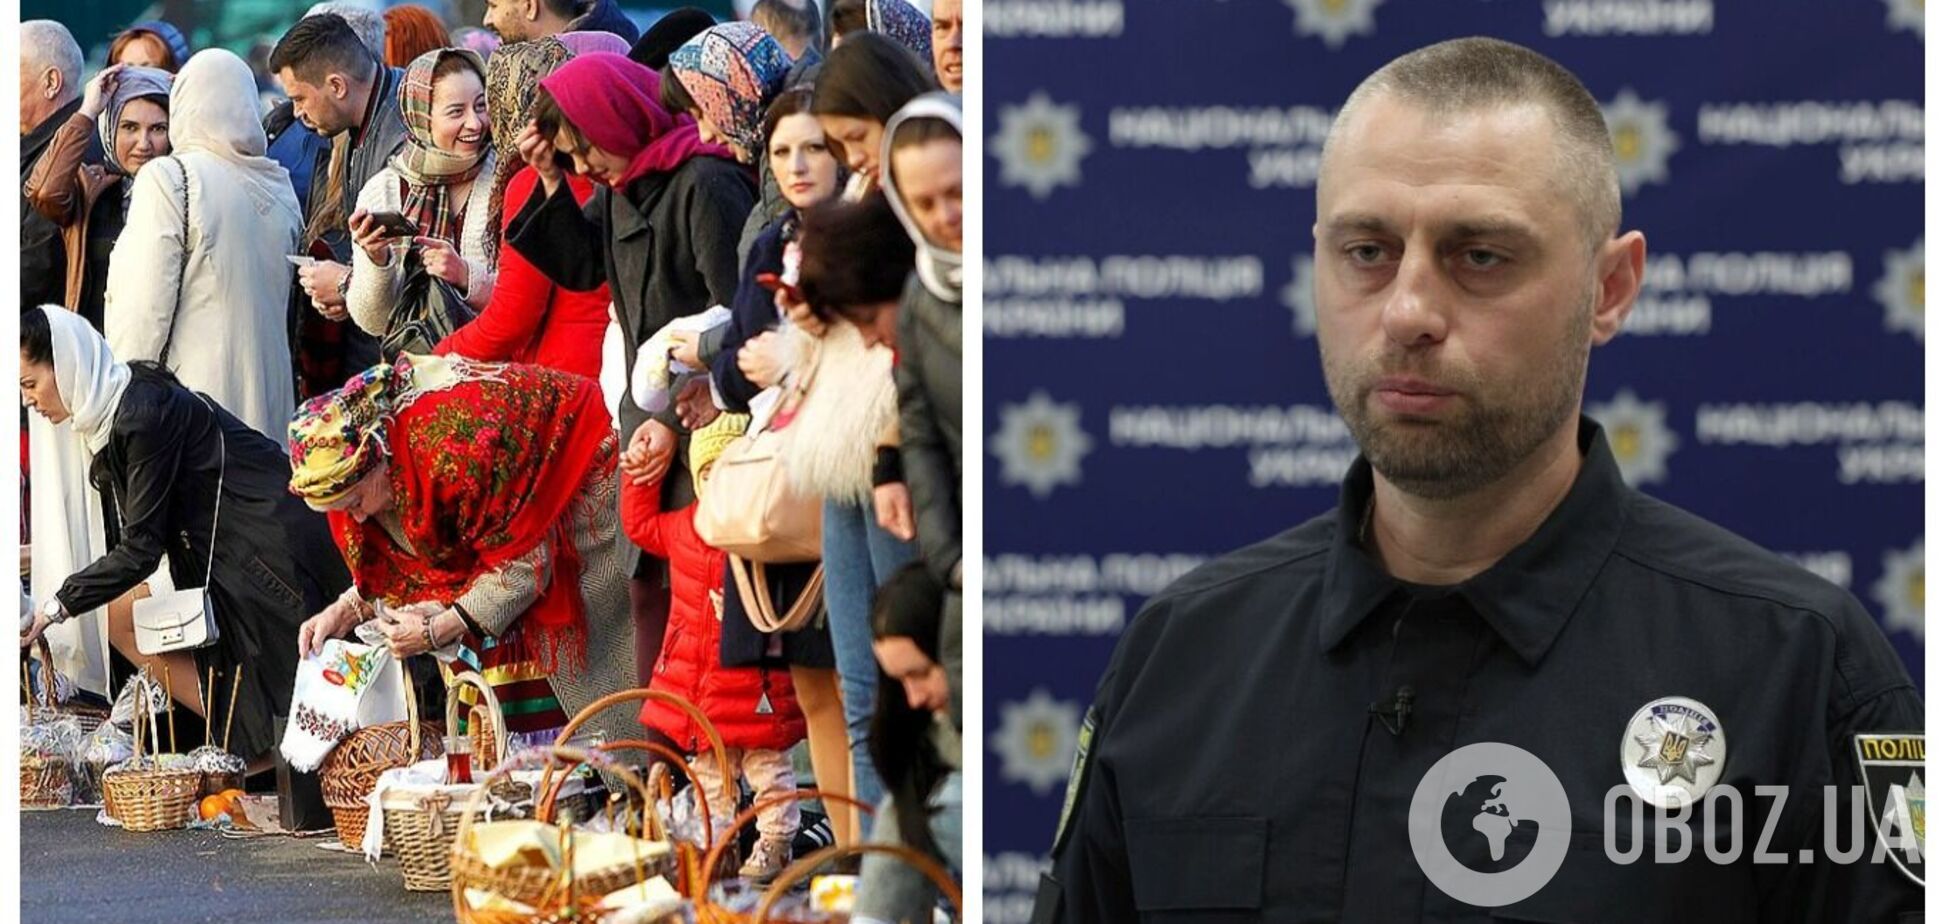 В Украине на Пасху будет увеличено количество нарядов правоохранителей: в Нацполиции сделали заявление